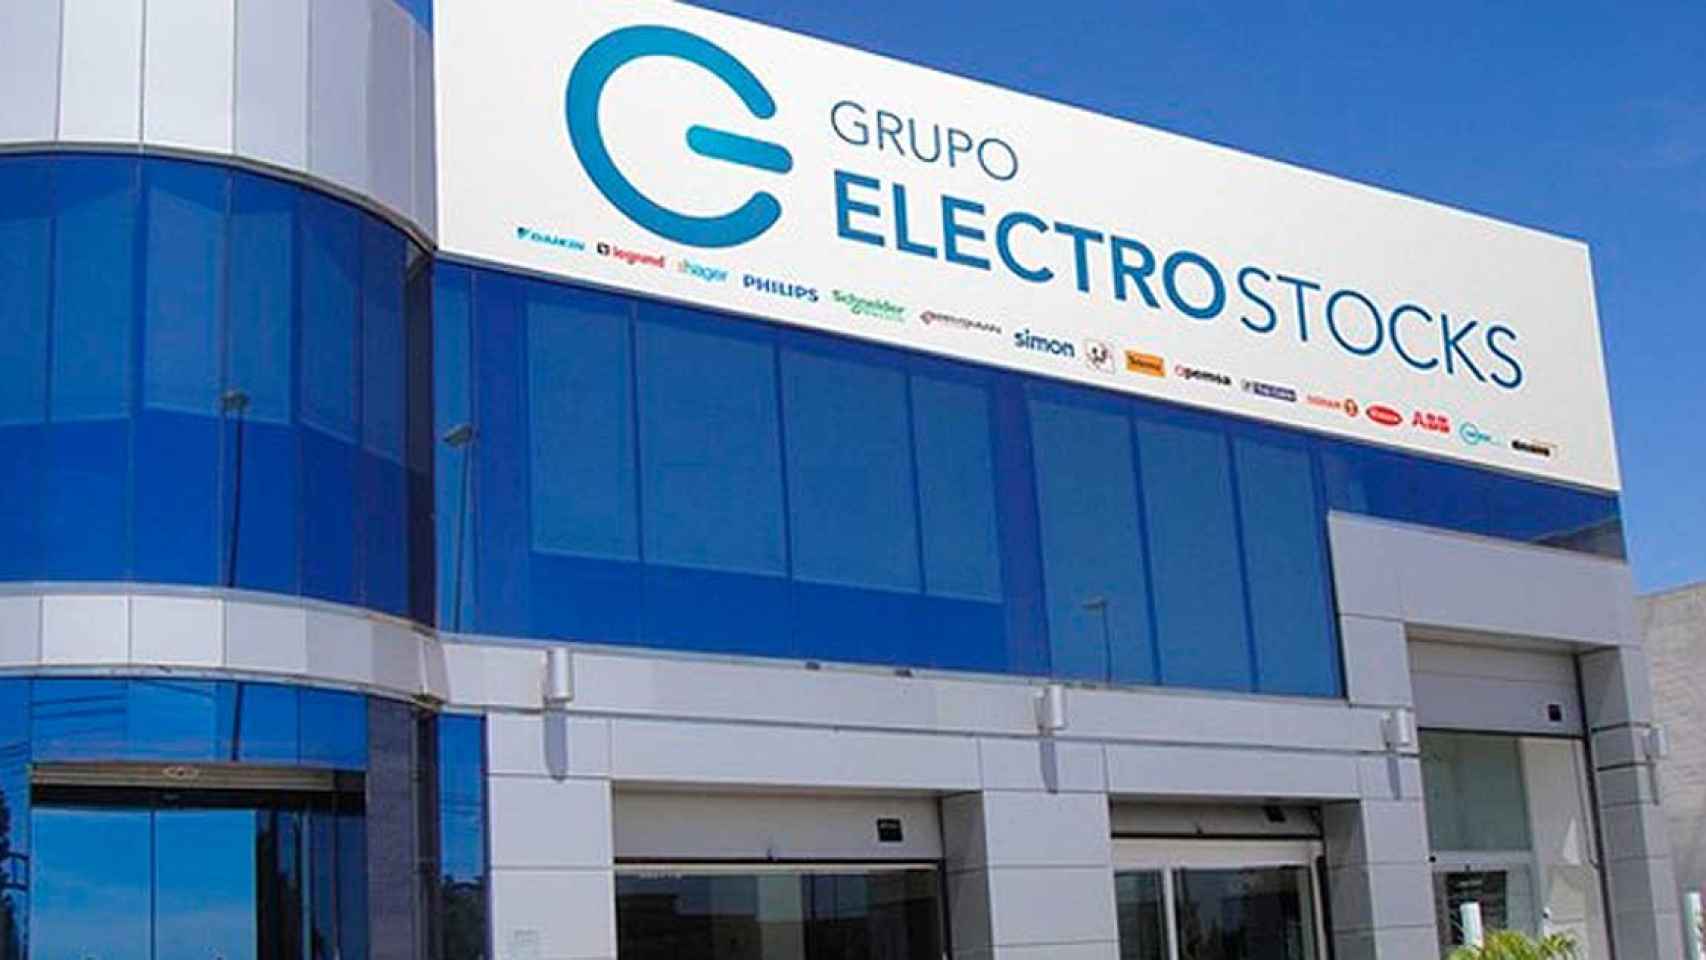 Electro Almacén del grupo Electro-Stocks / EP